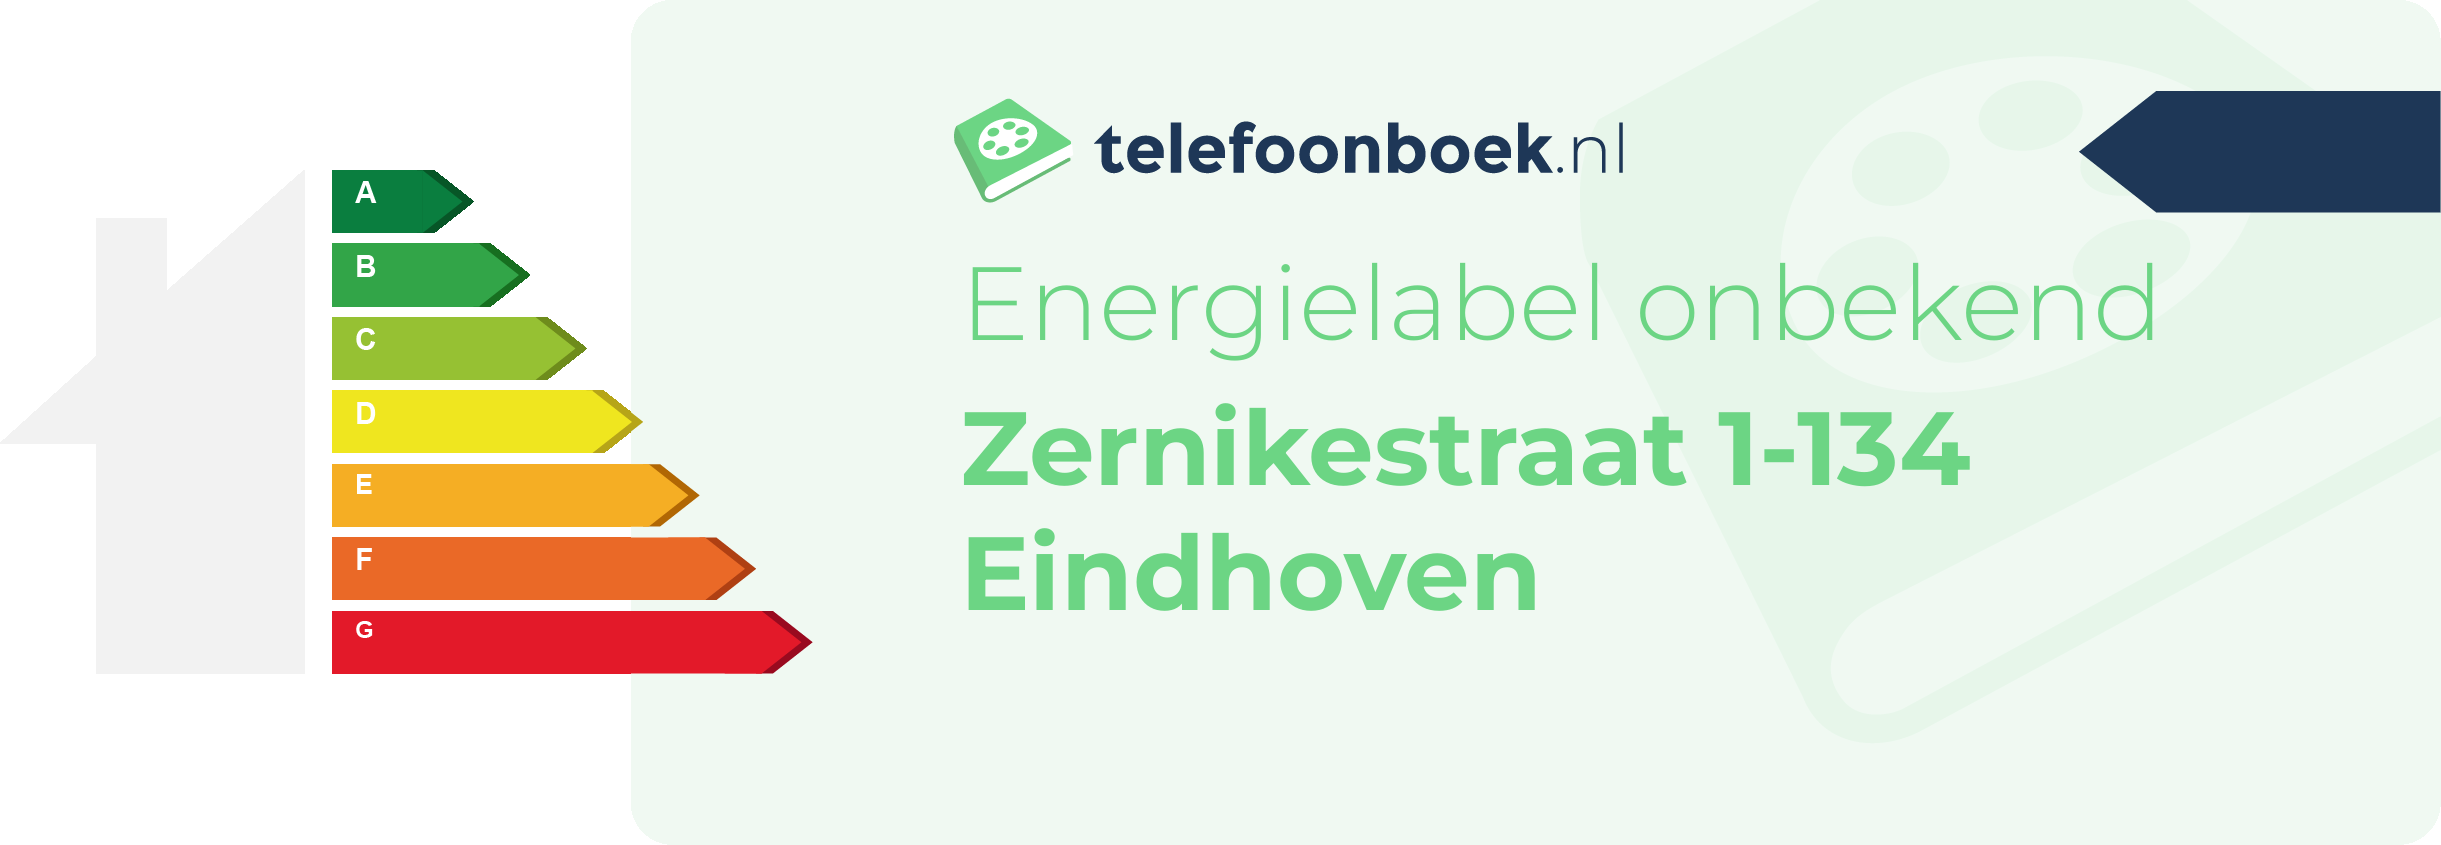 Energielabel Zernikestraat 1-134 Eindhoven